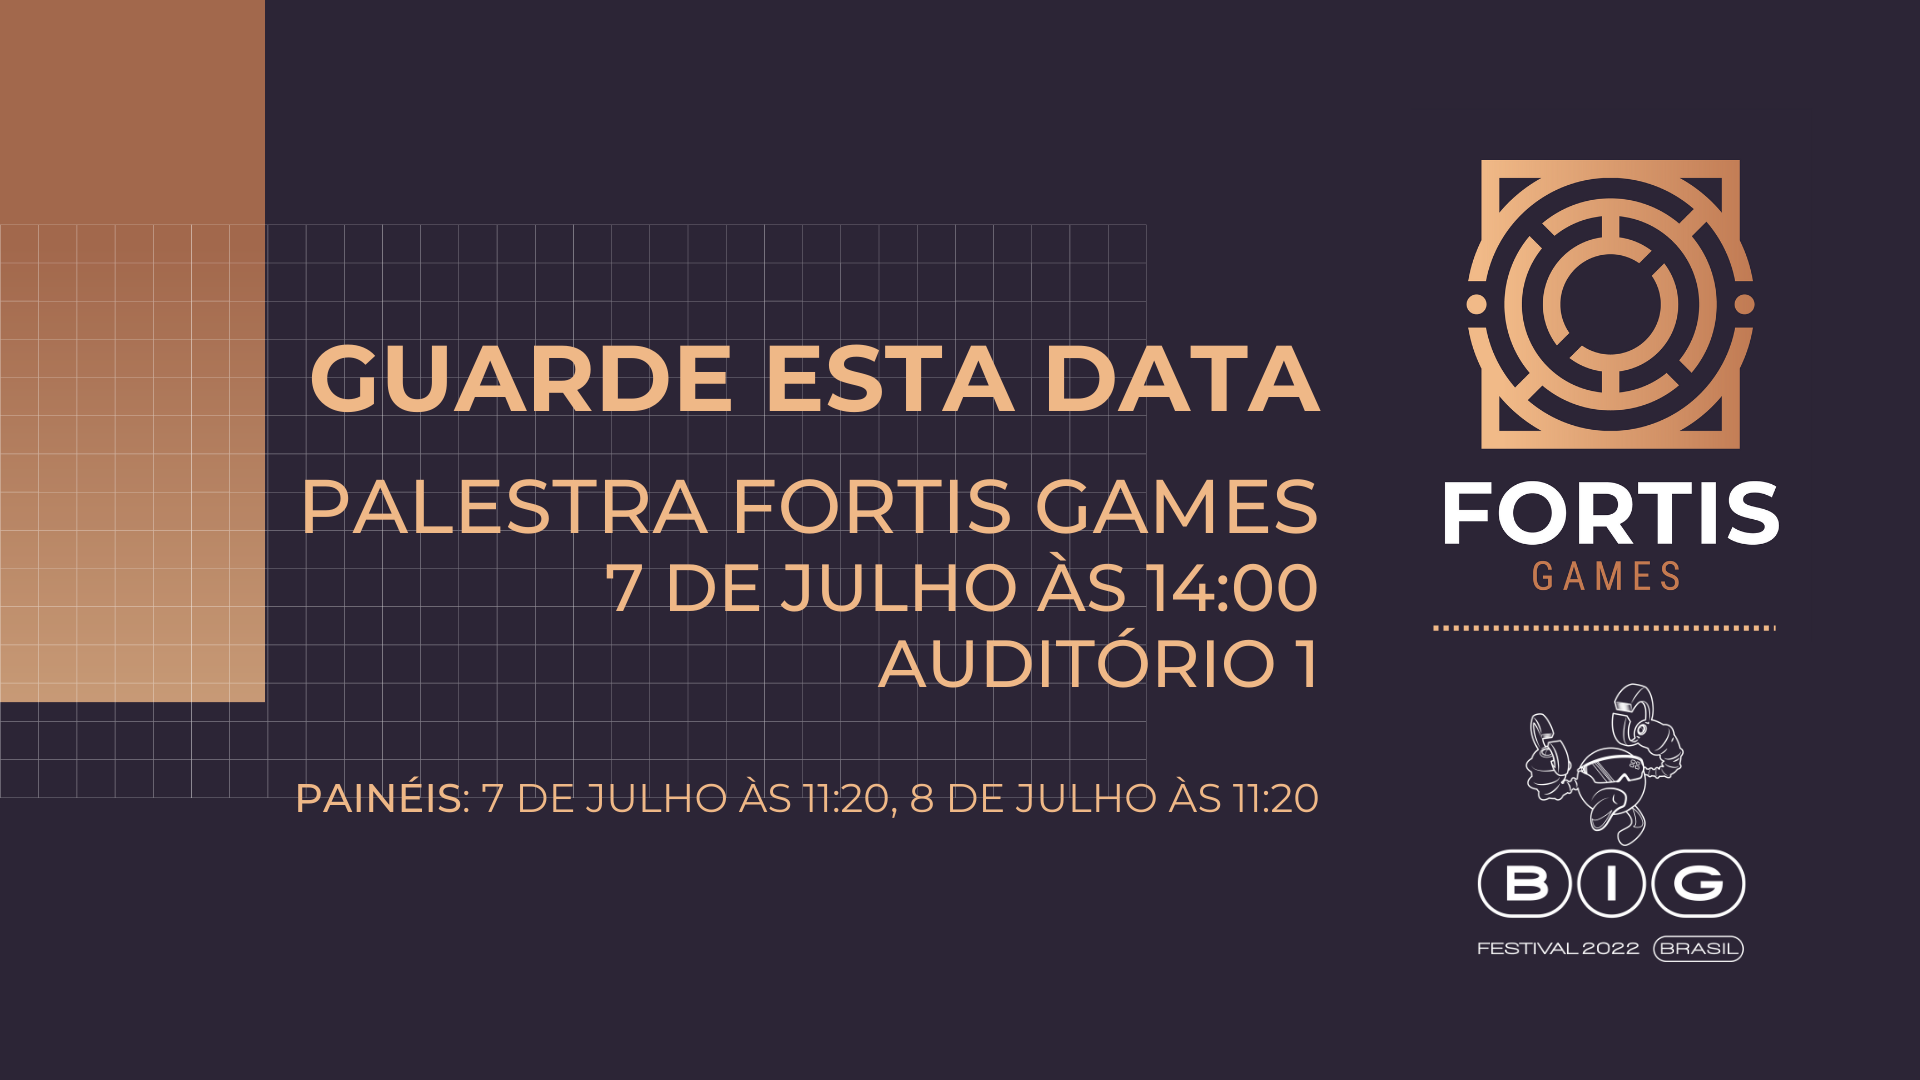 Fortis Games, um estúdio global de jogos, busca recrutar os melhores talentos no BIG Festival